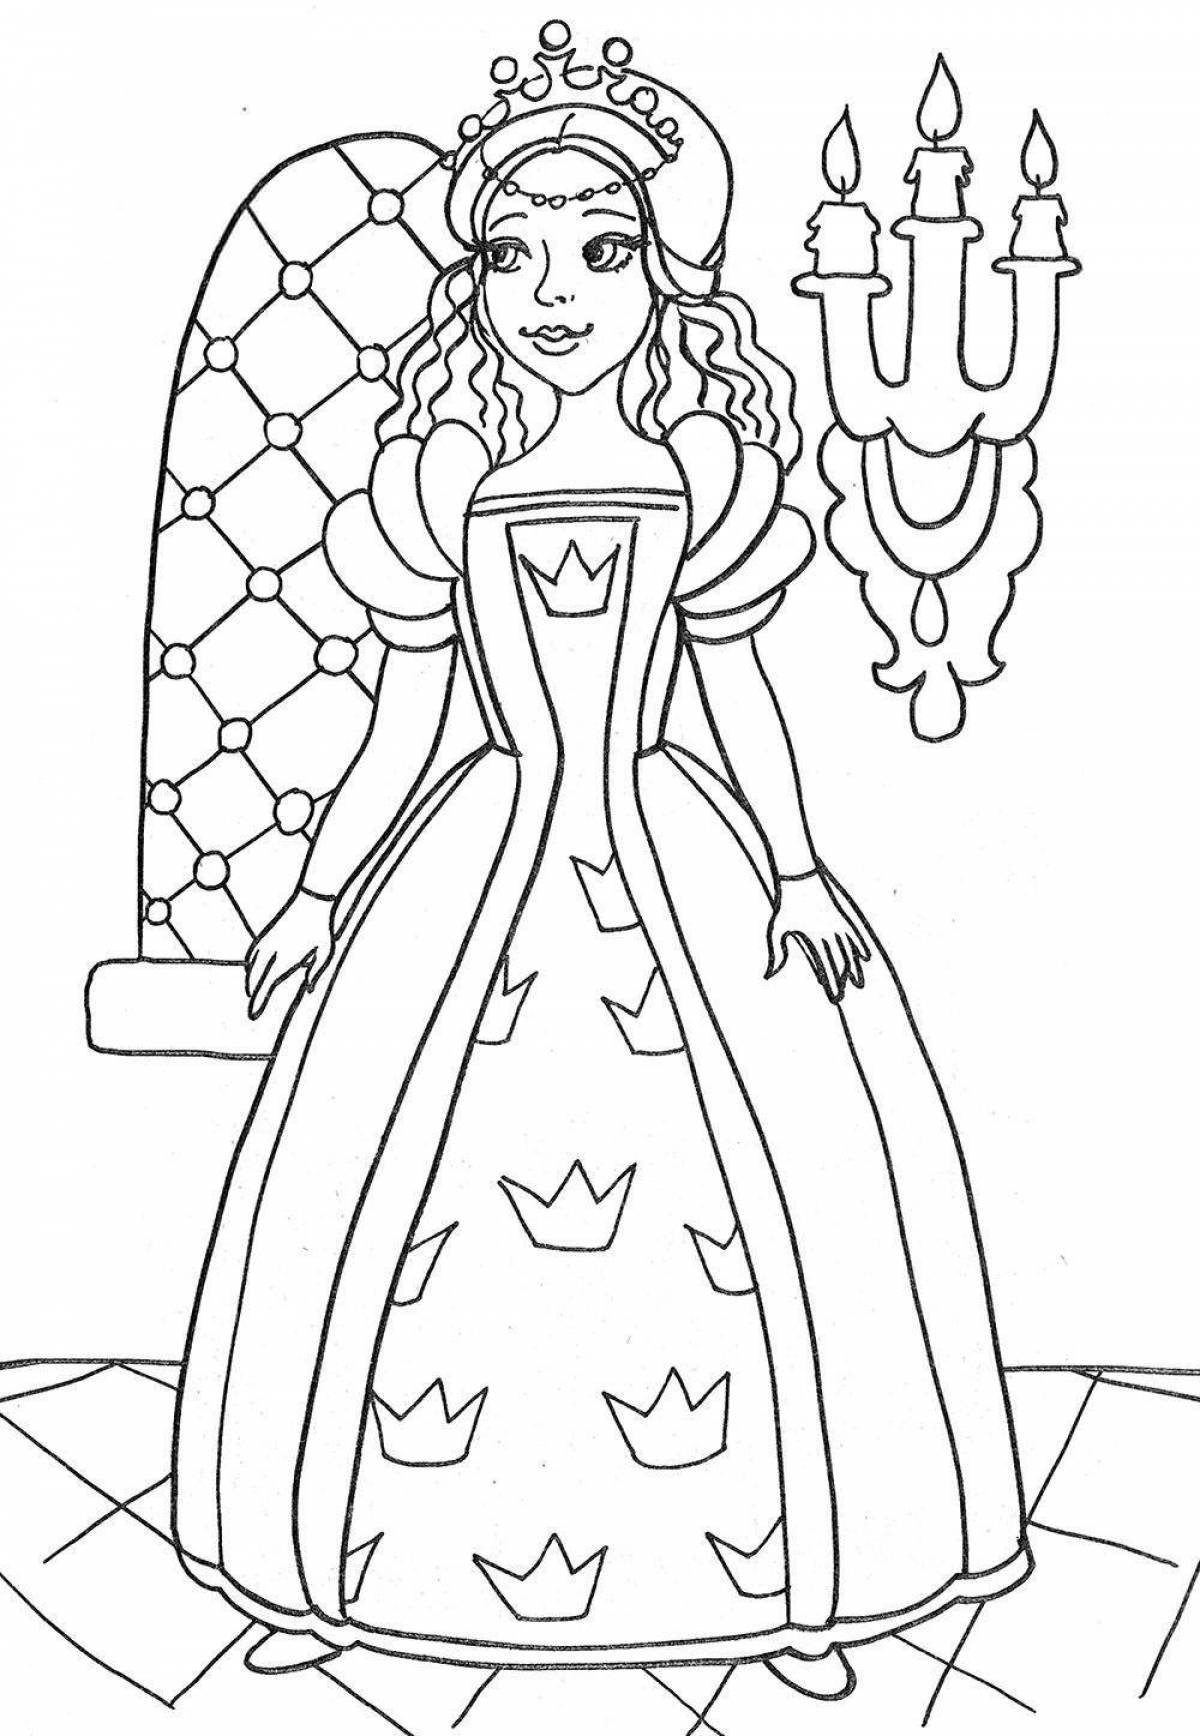 Величественная раскраска принцесса с короной